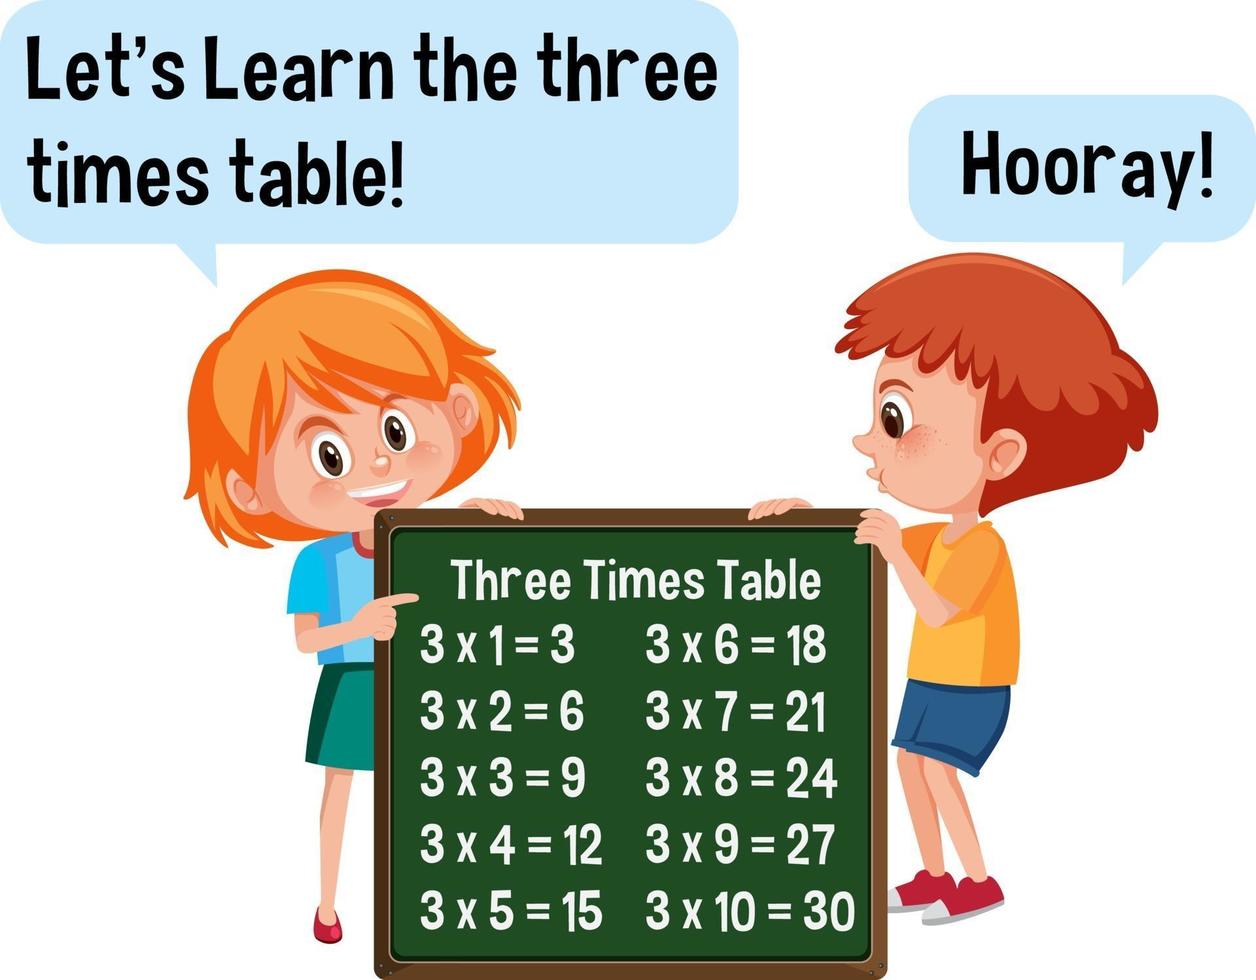 personnage de dessin animé de deux enfants tenant une bannière de table trois fois vecteur